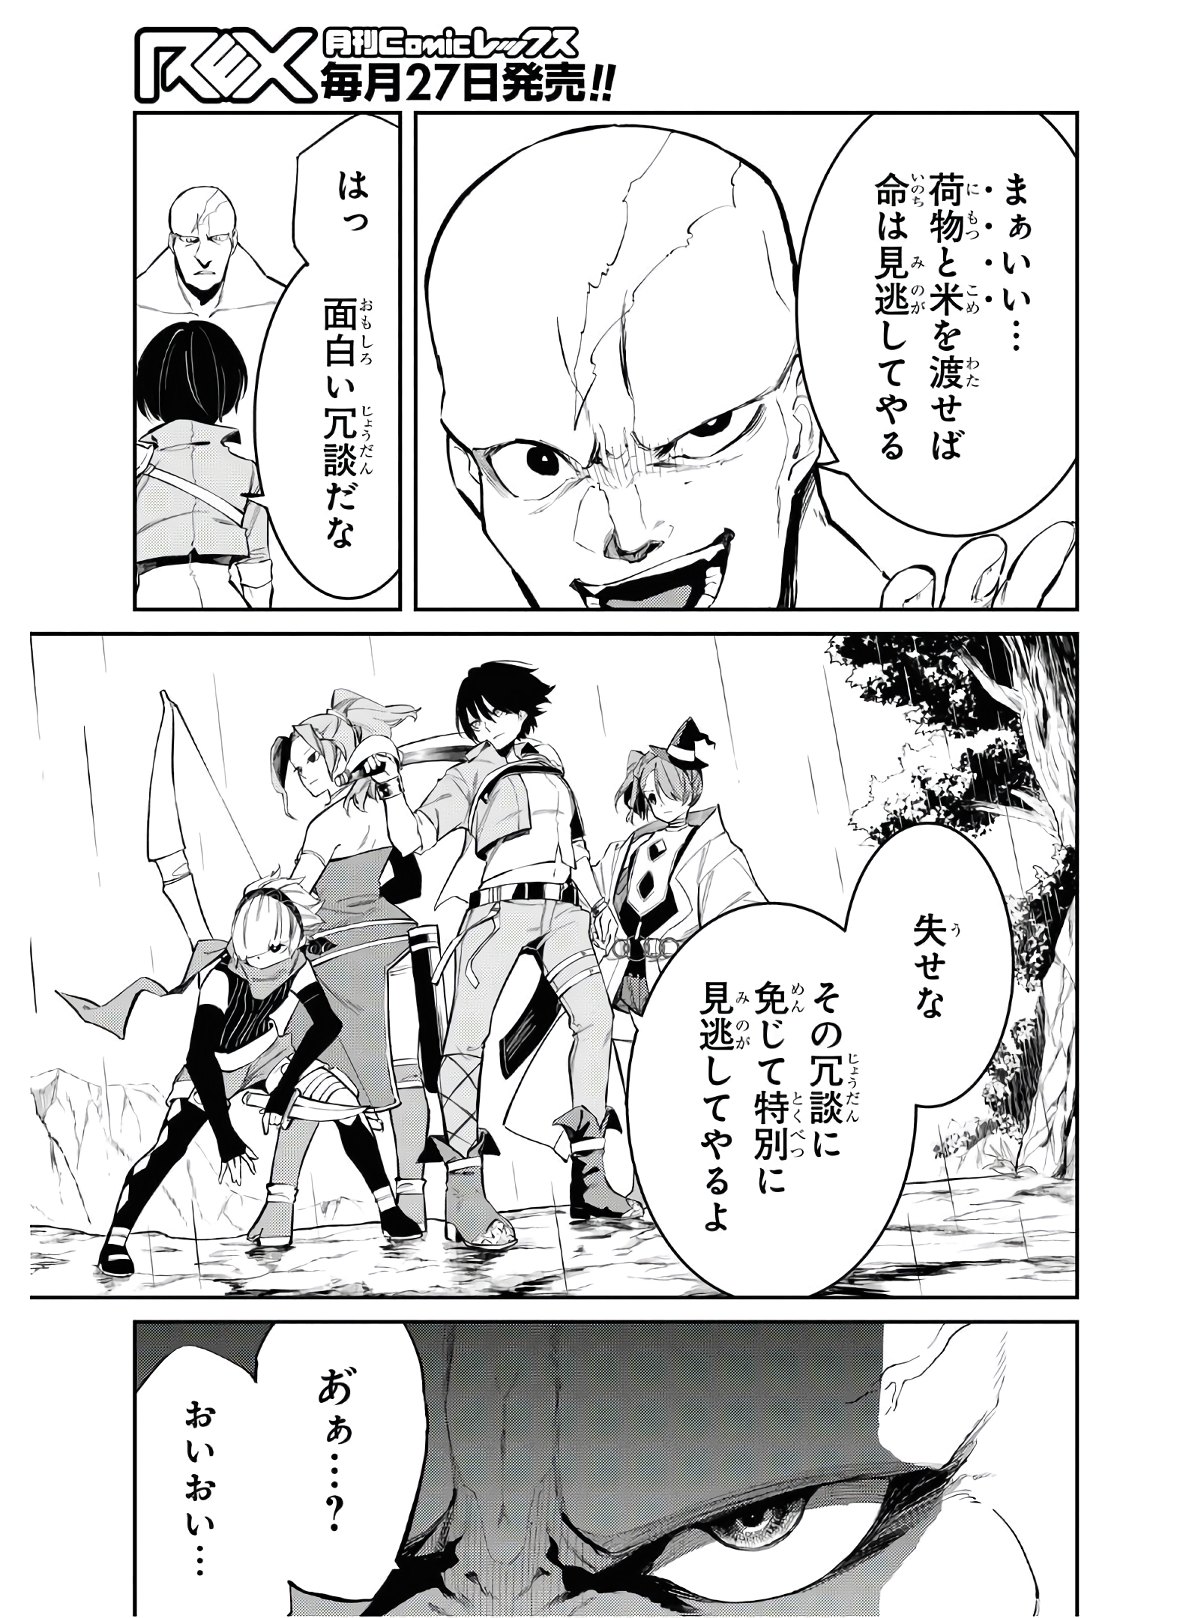 Maryoku 0 de Saikyou no Daikenja ~Sore wa Mahou dewa Nai, Butsuri da!~ - Chapter 4 - Page 5